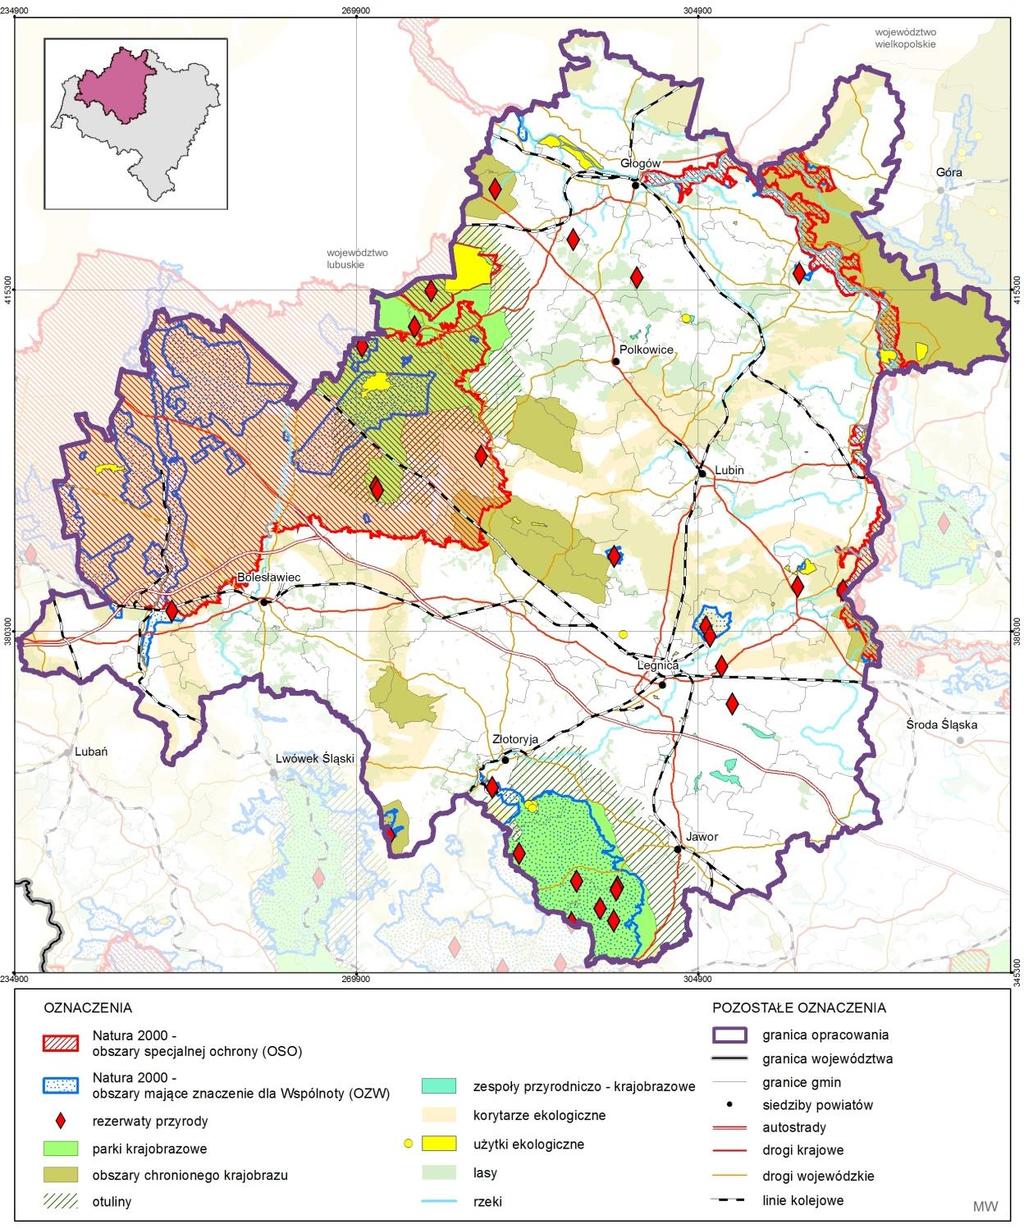 Zgodnie z koncepcją Projekt korytarzy ekologicznych łączących Europejską Sieć Natura 2000 w Polsce wykonanego przez Zakład Badania Ssaków PAN Białowieża w 2005 r.